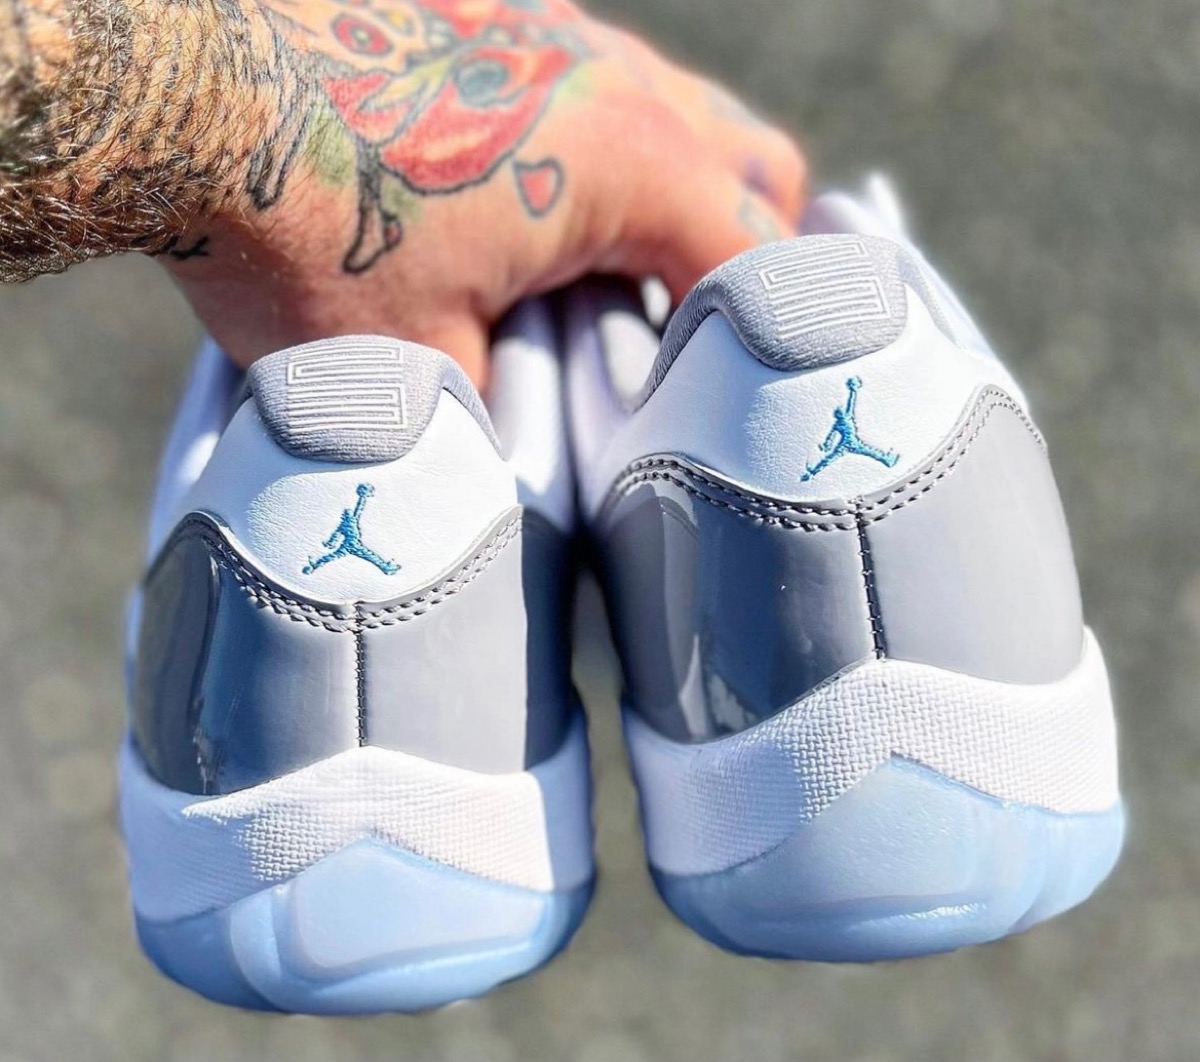 Nike Air Jordan 11 Retro Low “Cement Grey”が国内4月1日に発売予定 